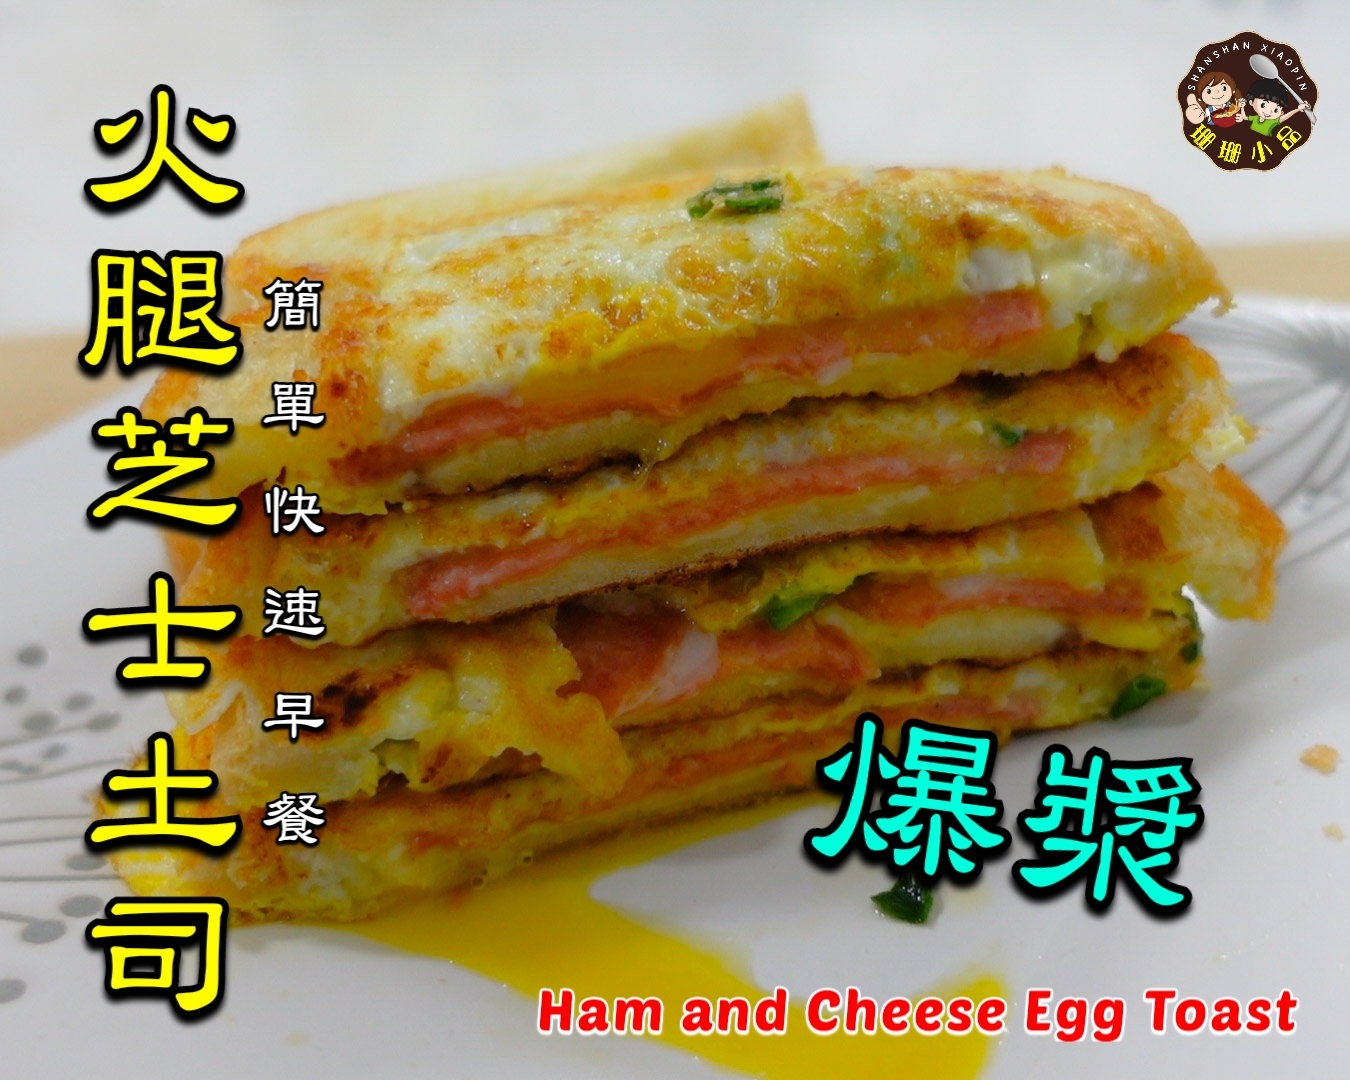 火腿芝士雞蛋土司 - Ham and Cheese Egg Toast